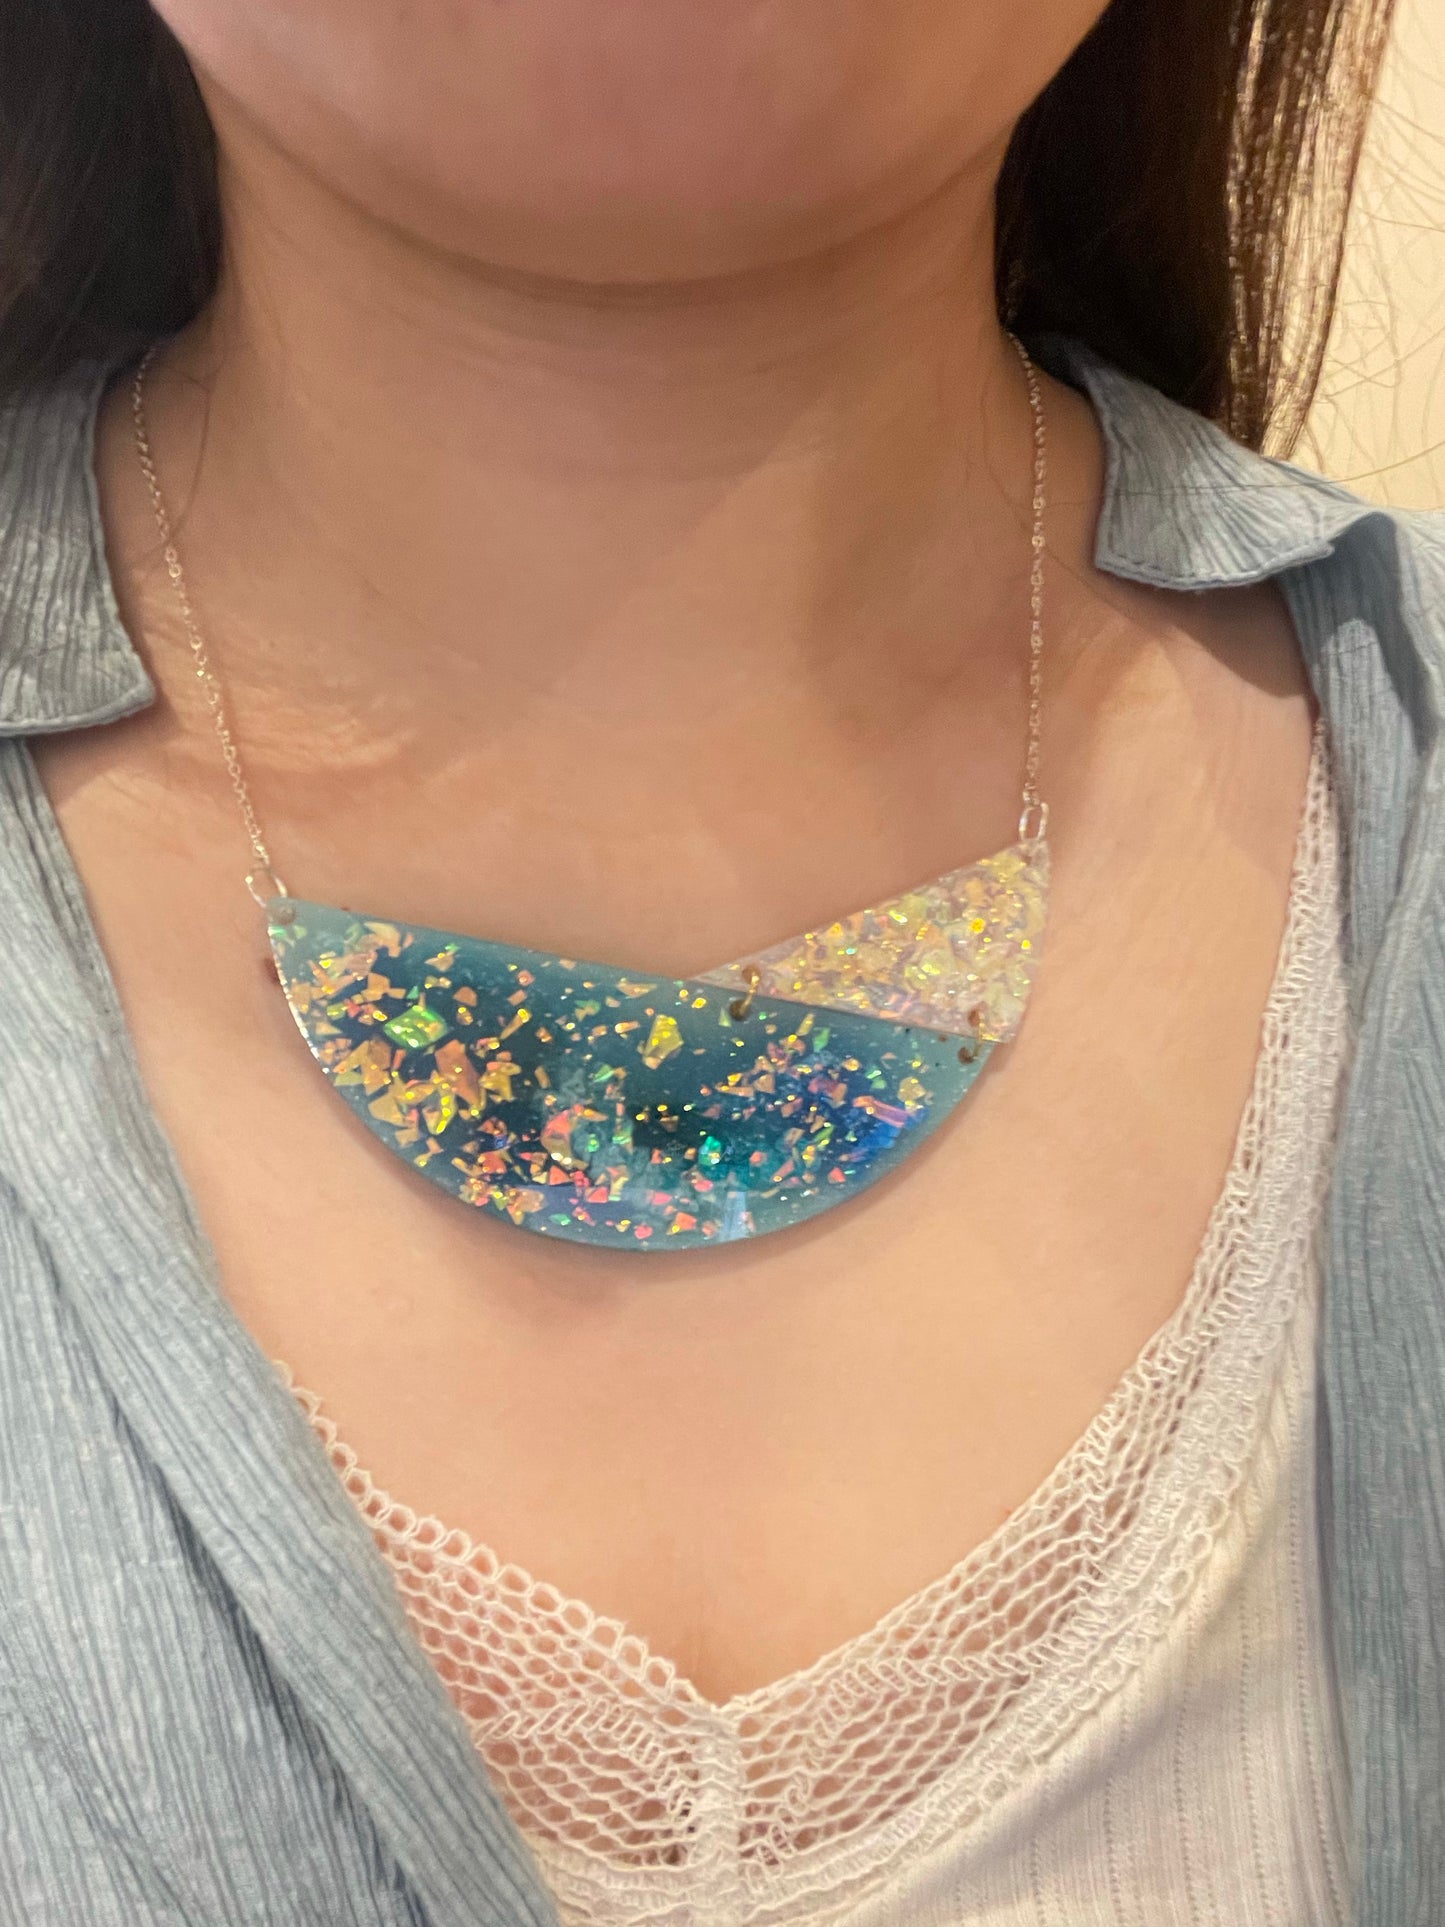 Large 2-part bib necklace pendant mold